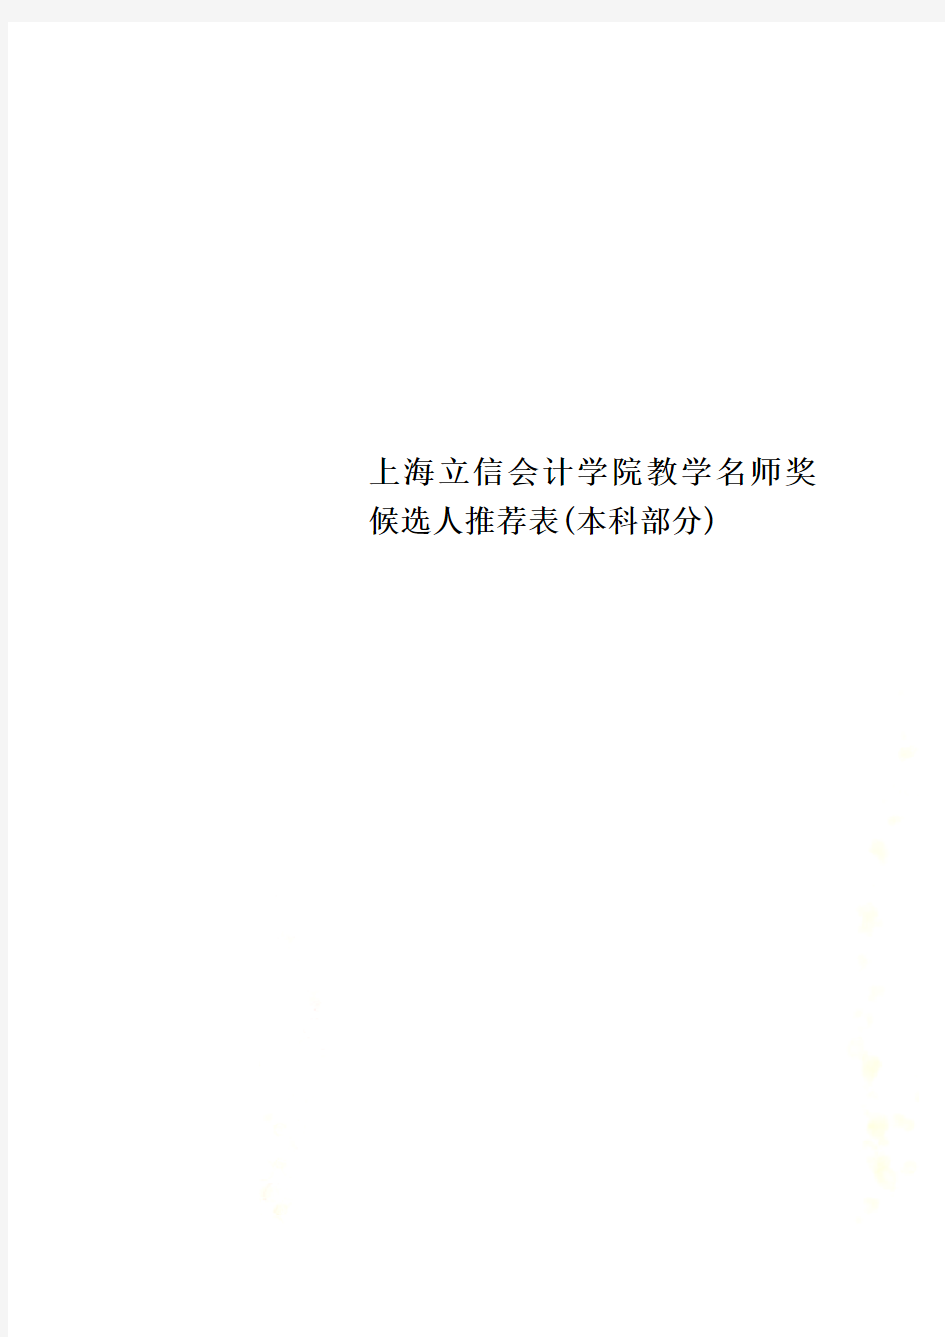 上海立信会计学院教学名师奖候选人推荐表(本科部分)